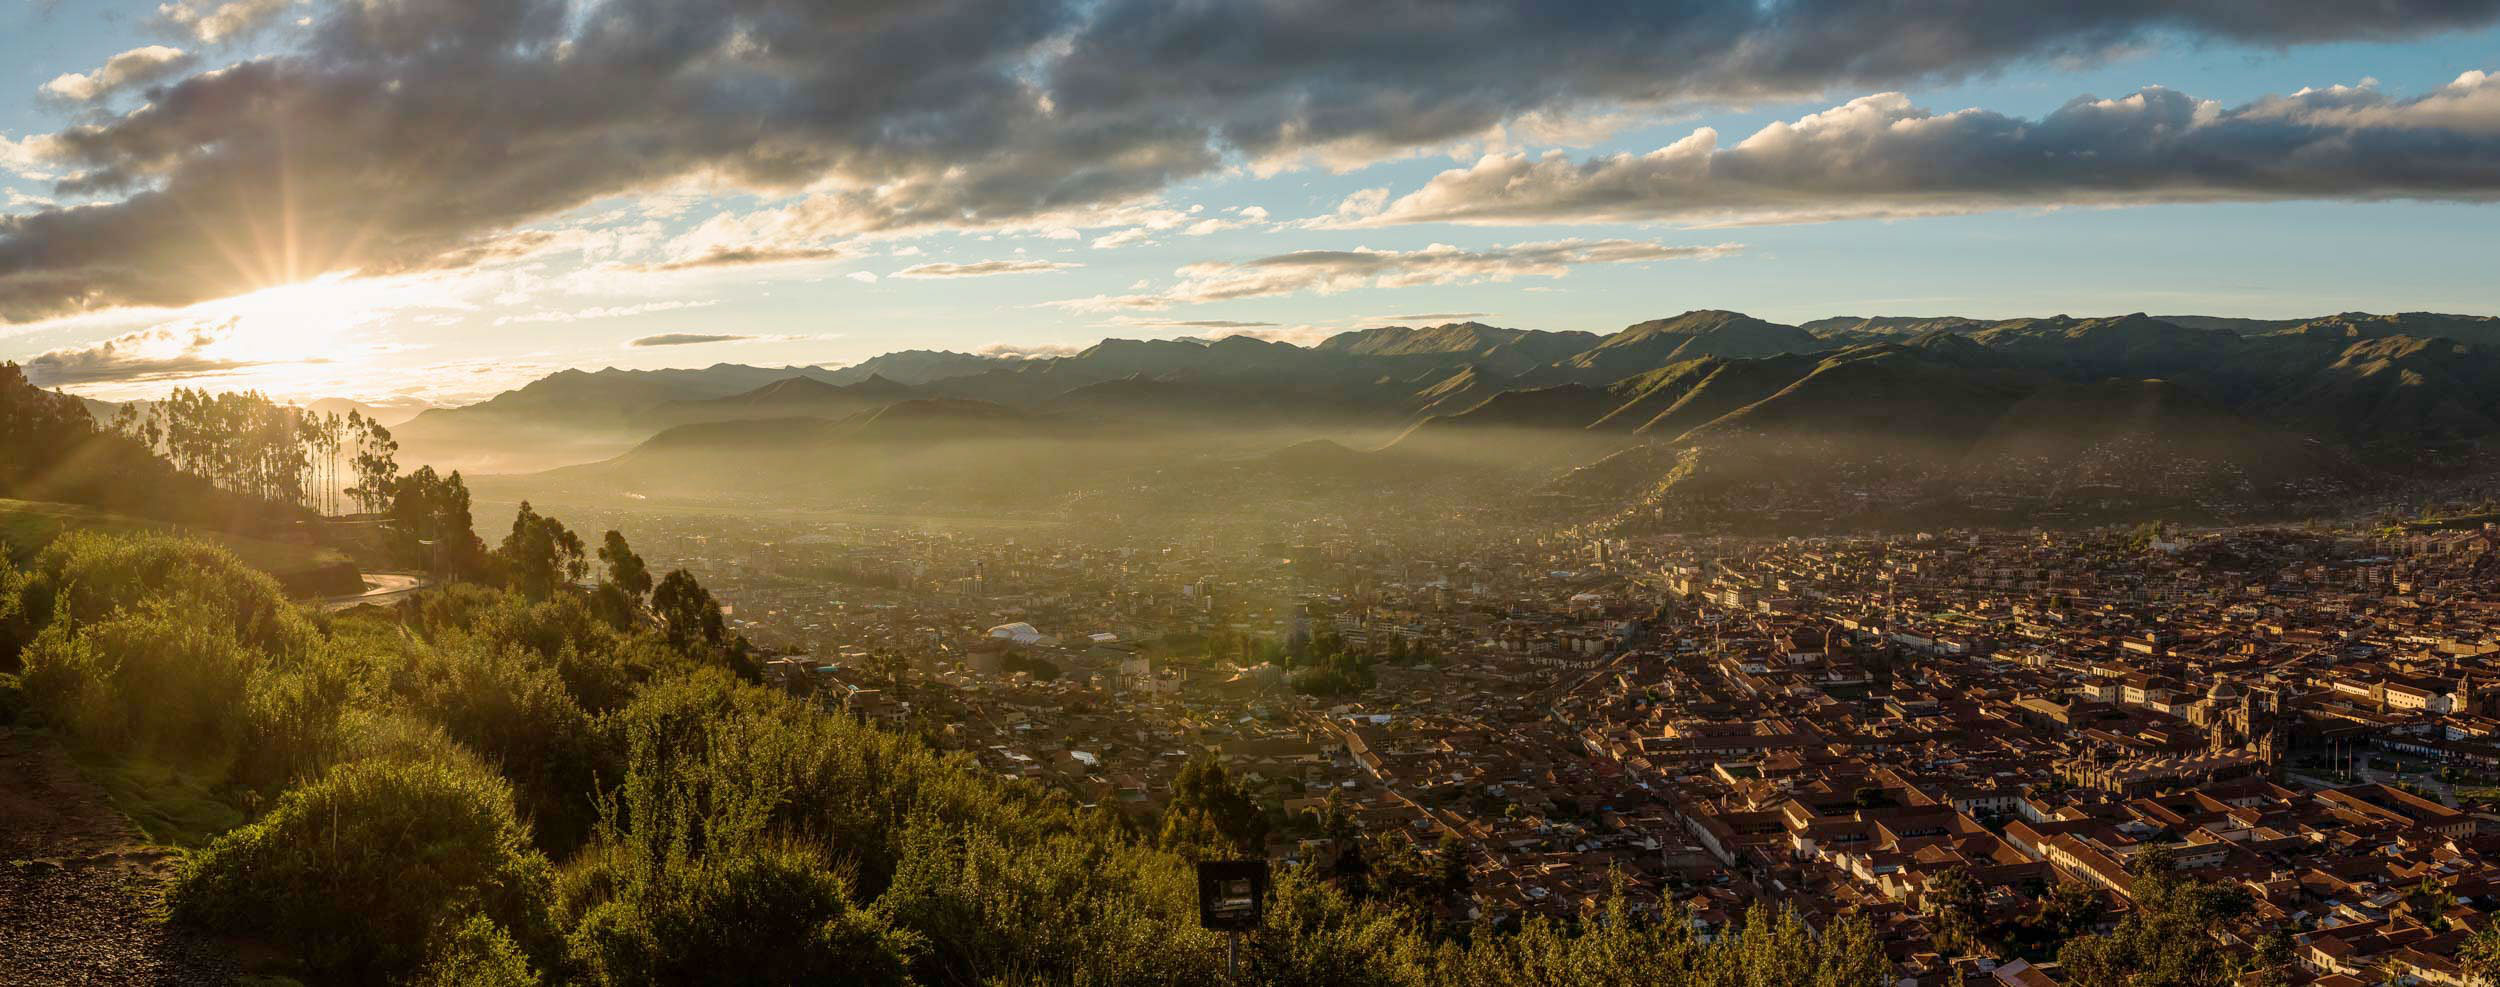 cusco-landscape-sunrise-dawn-panoramic-peru-south-america